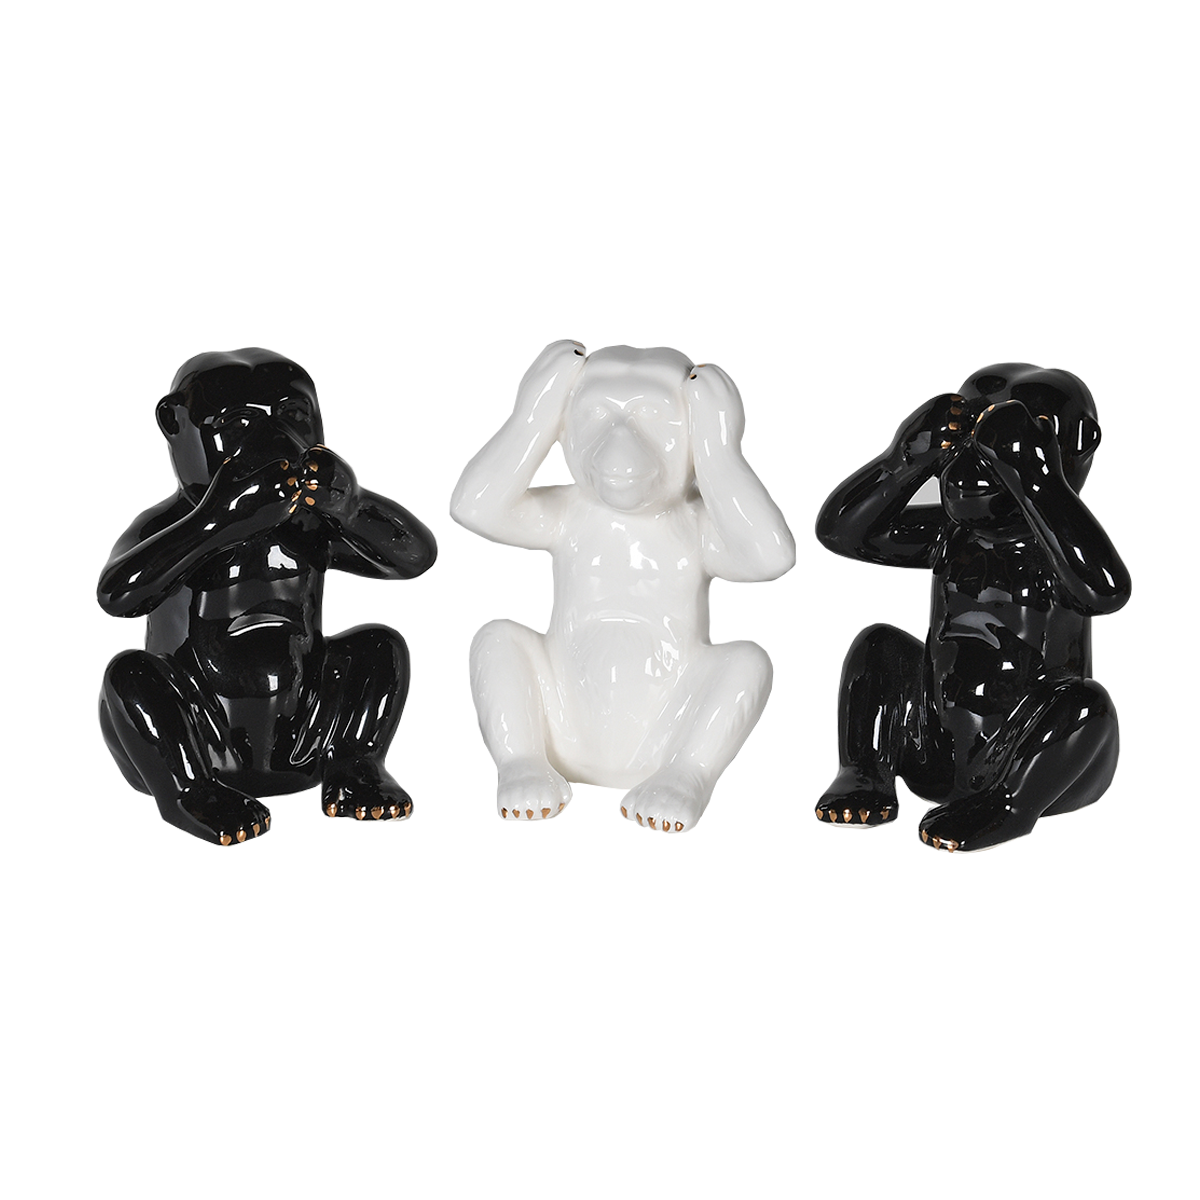 SALFORD S/3 dekorativne figure, crni i bijeli majmuni